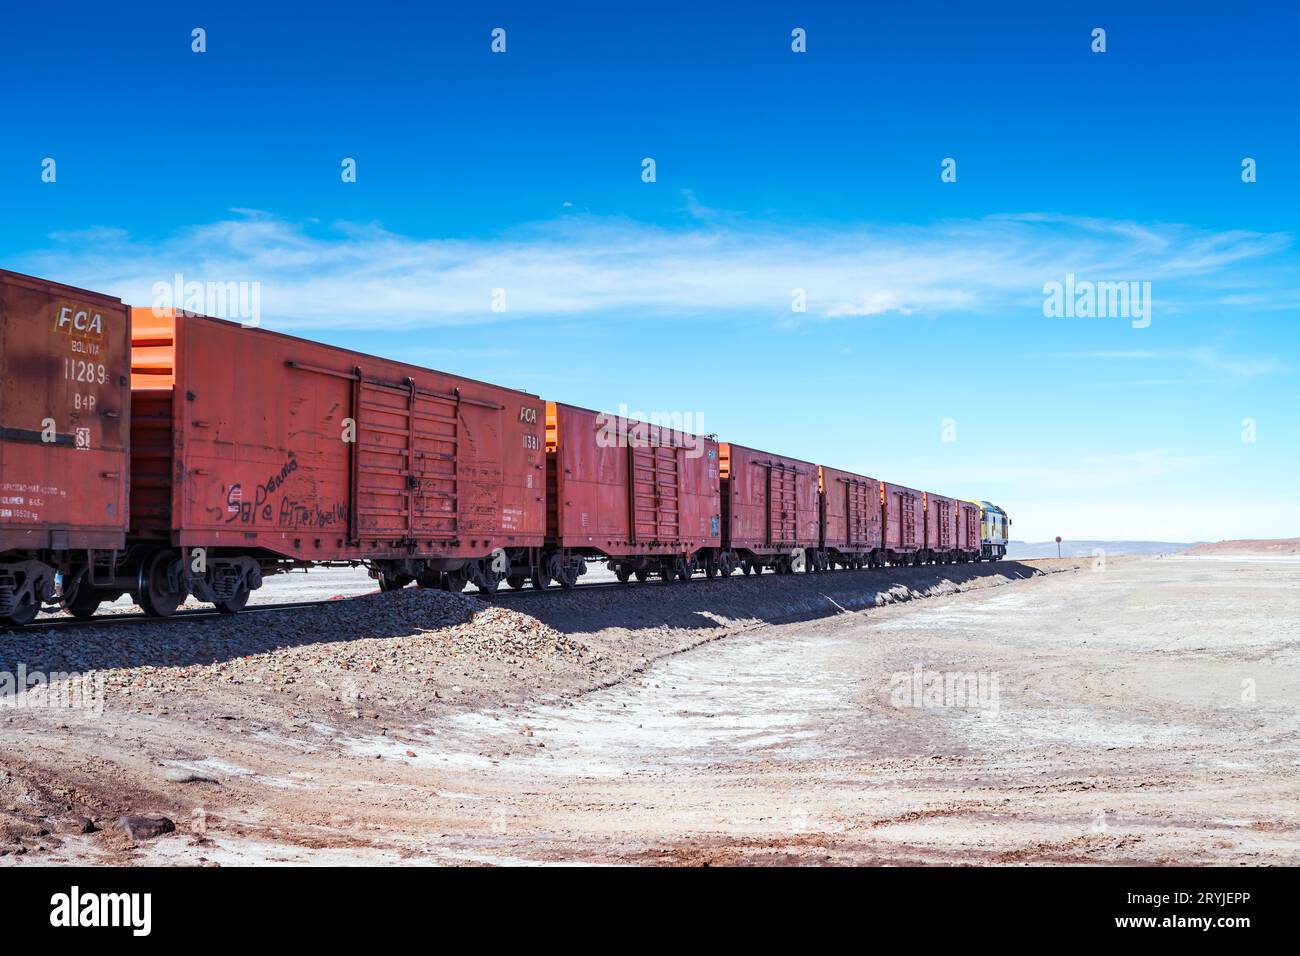 Cimitero dei treni nell'altiplano boliviano. Foto di alta qualità Foto Stock